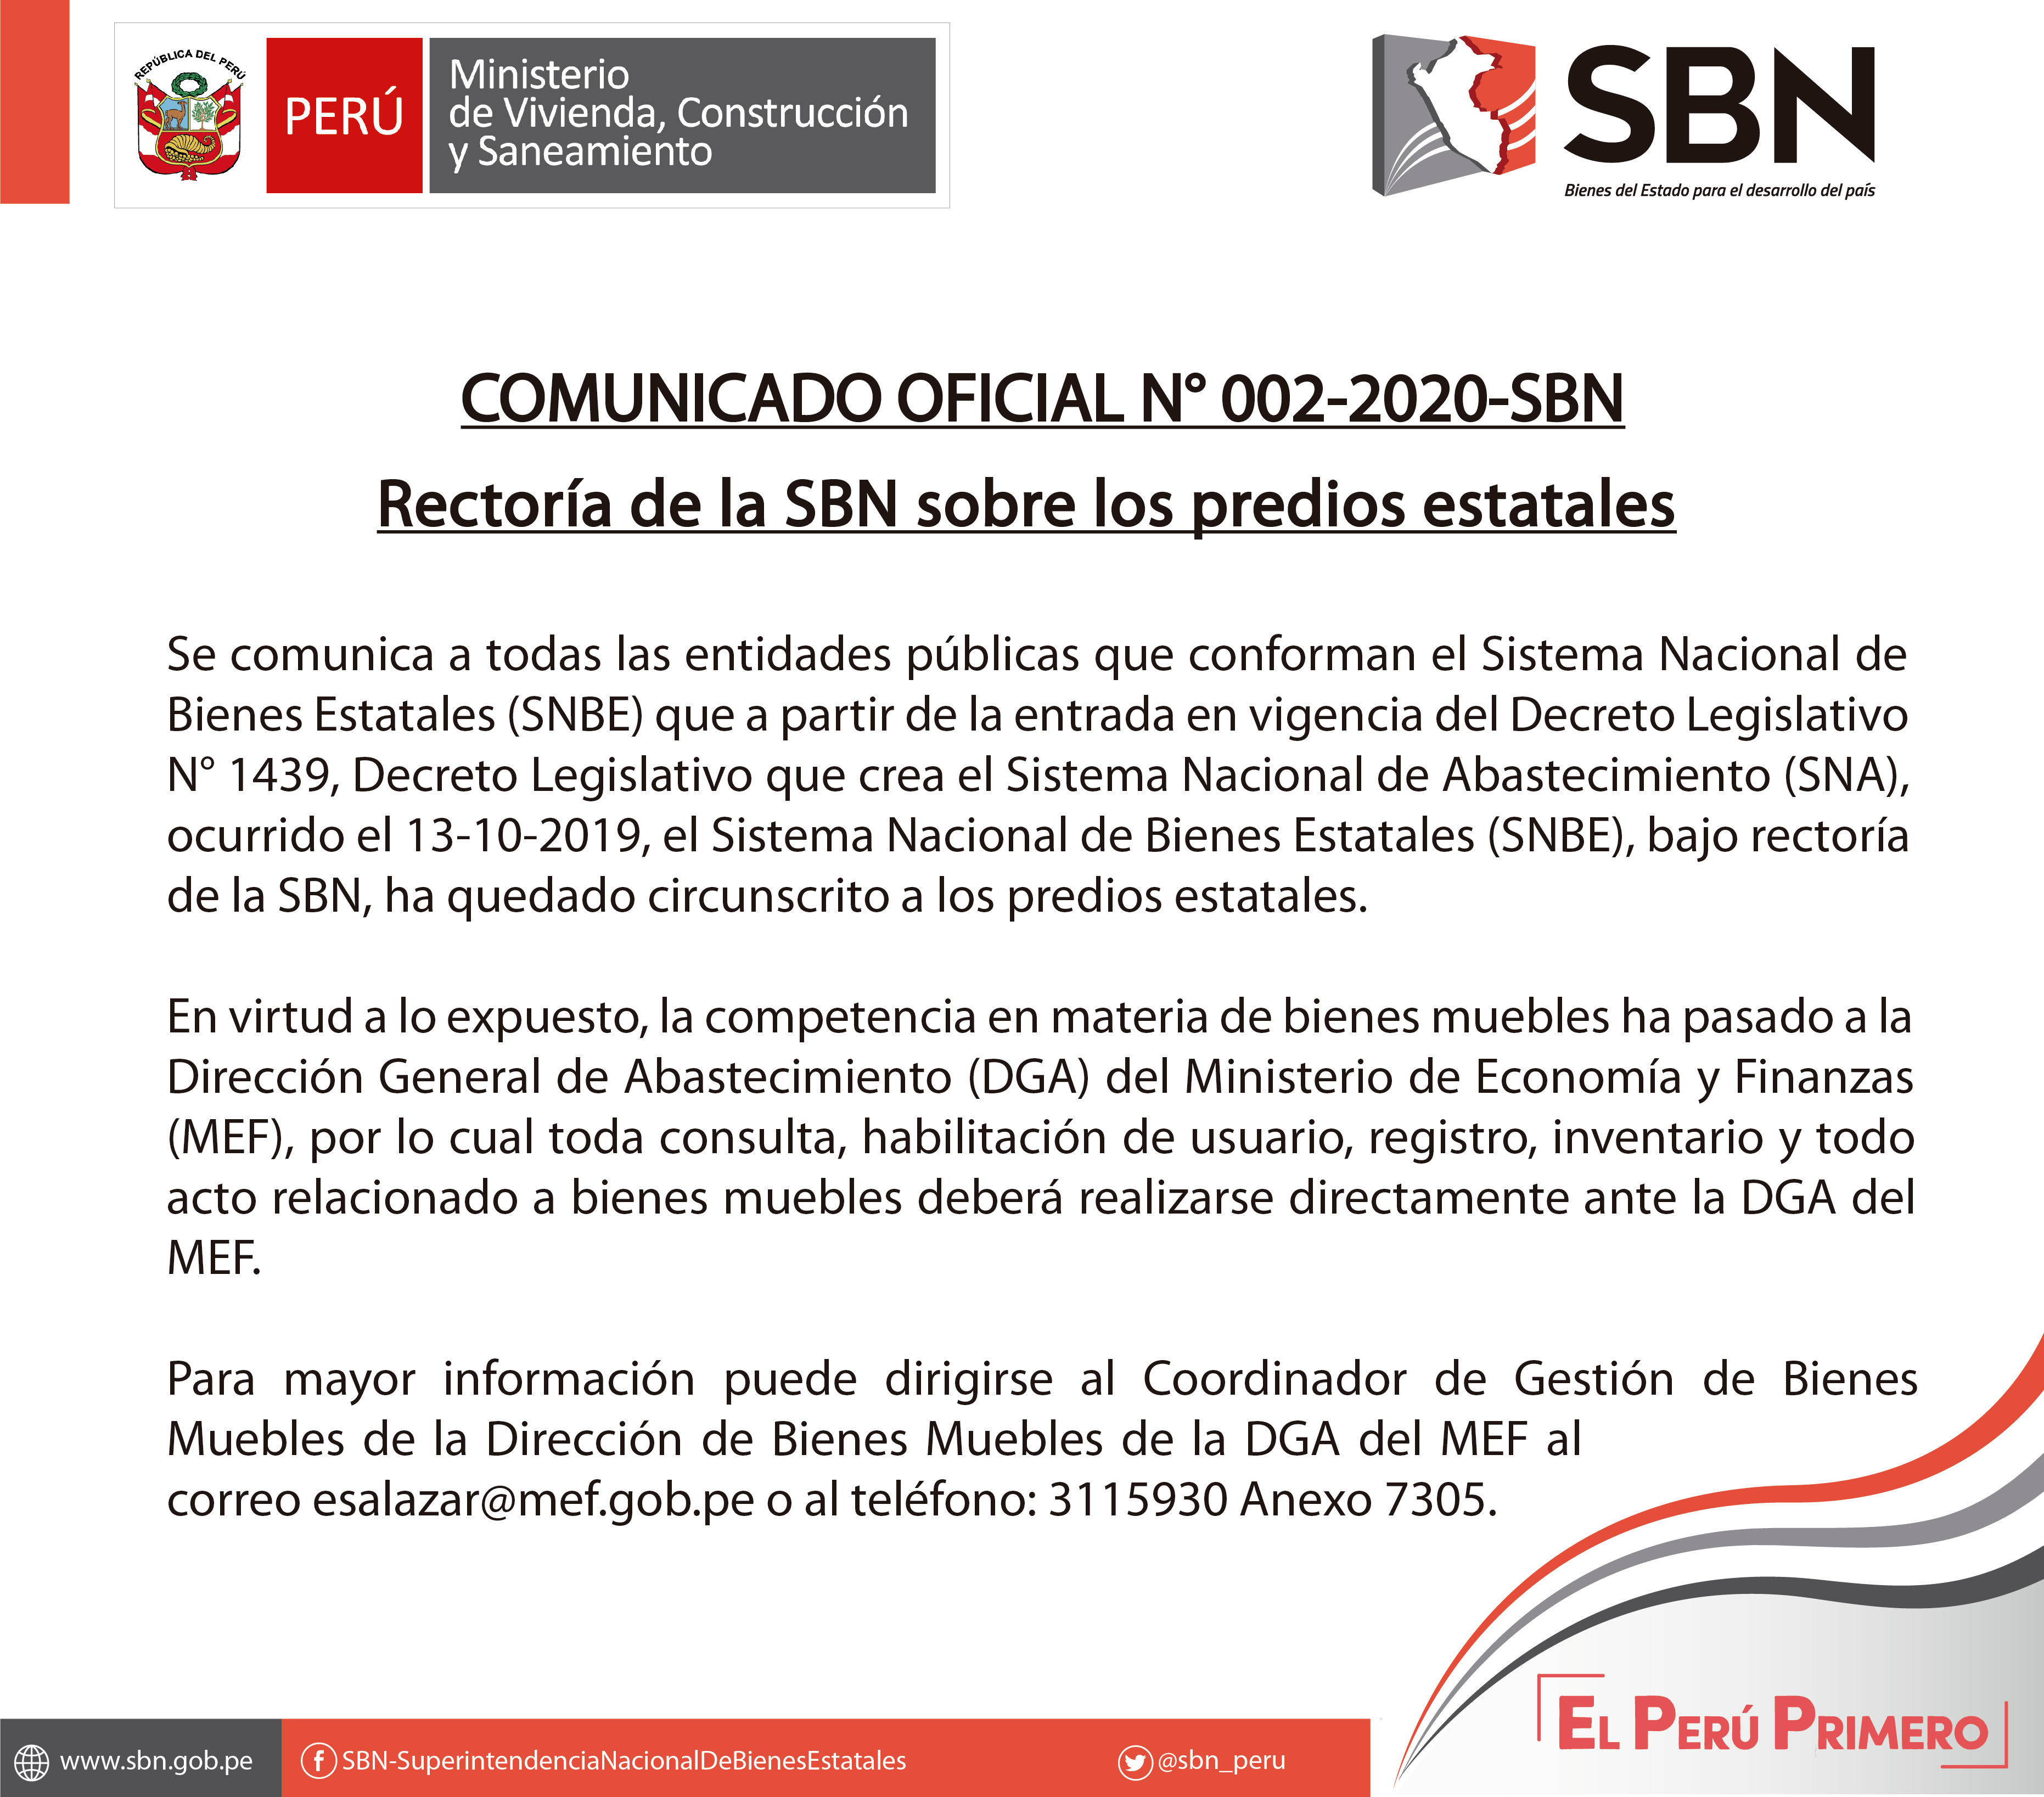  COMUNICADO OFICIAL N° 002-2020-SBN